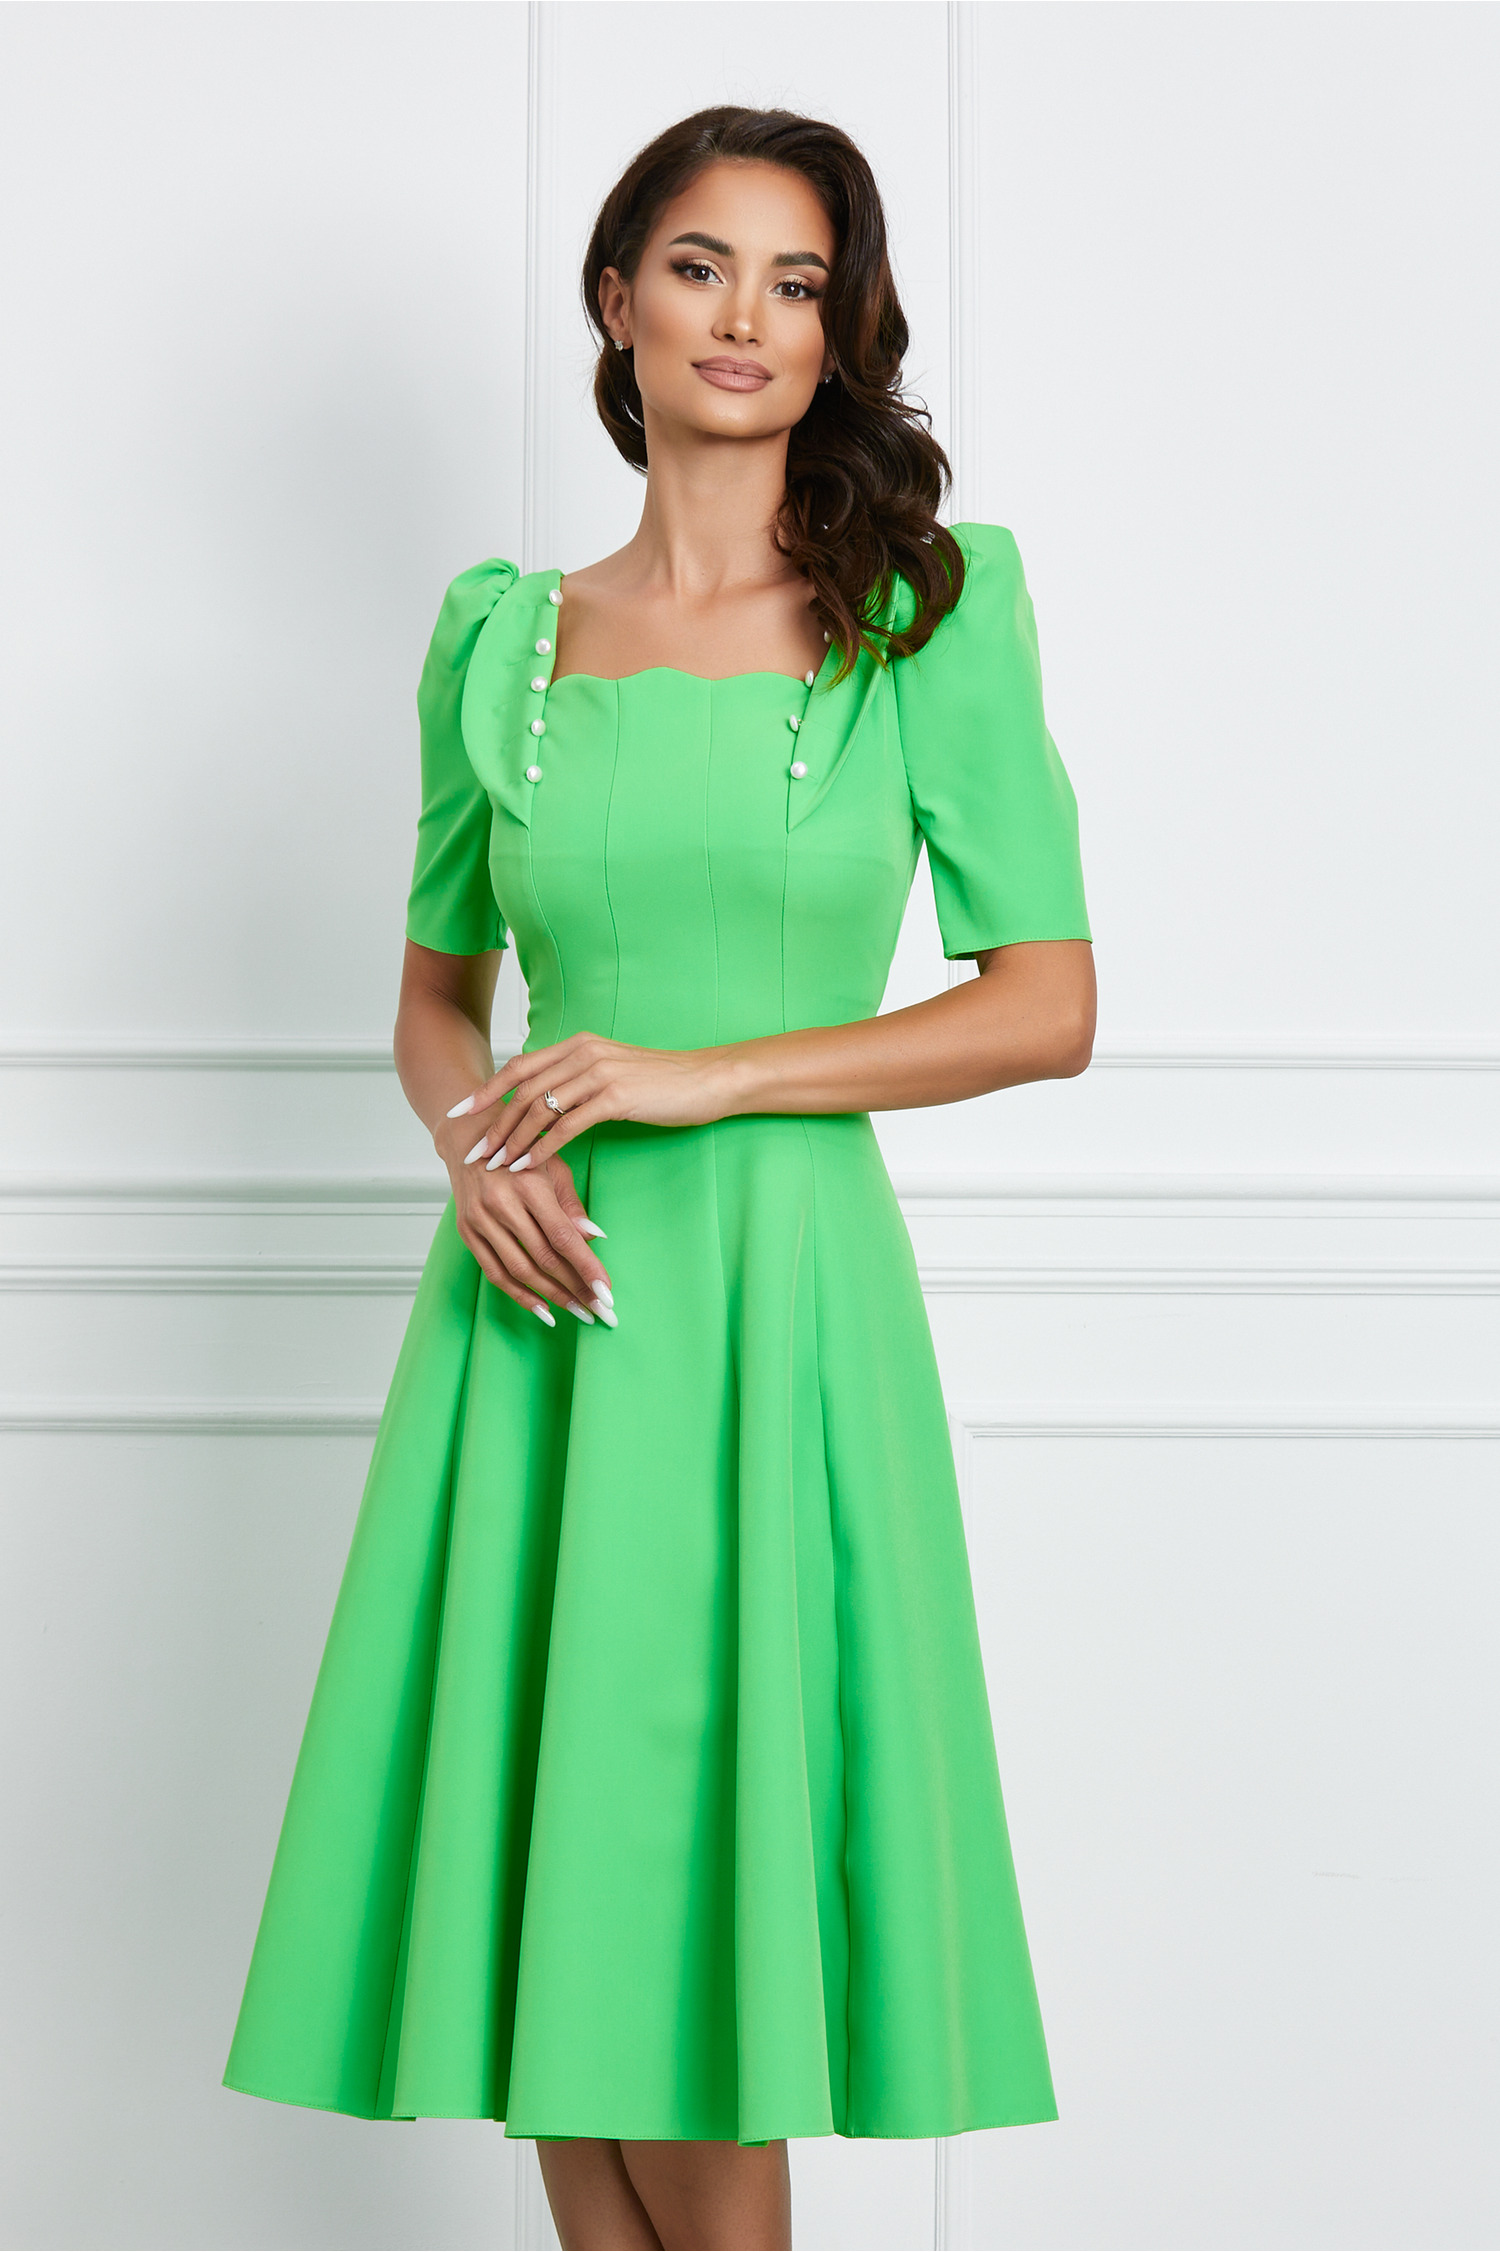 Rochie Dy Fashion verde crud cu nasturi perlati si volane la bust